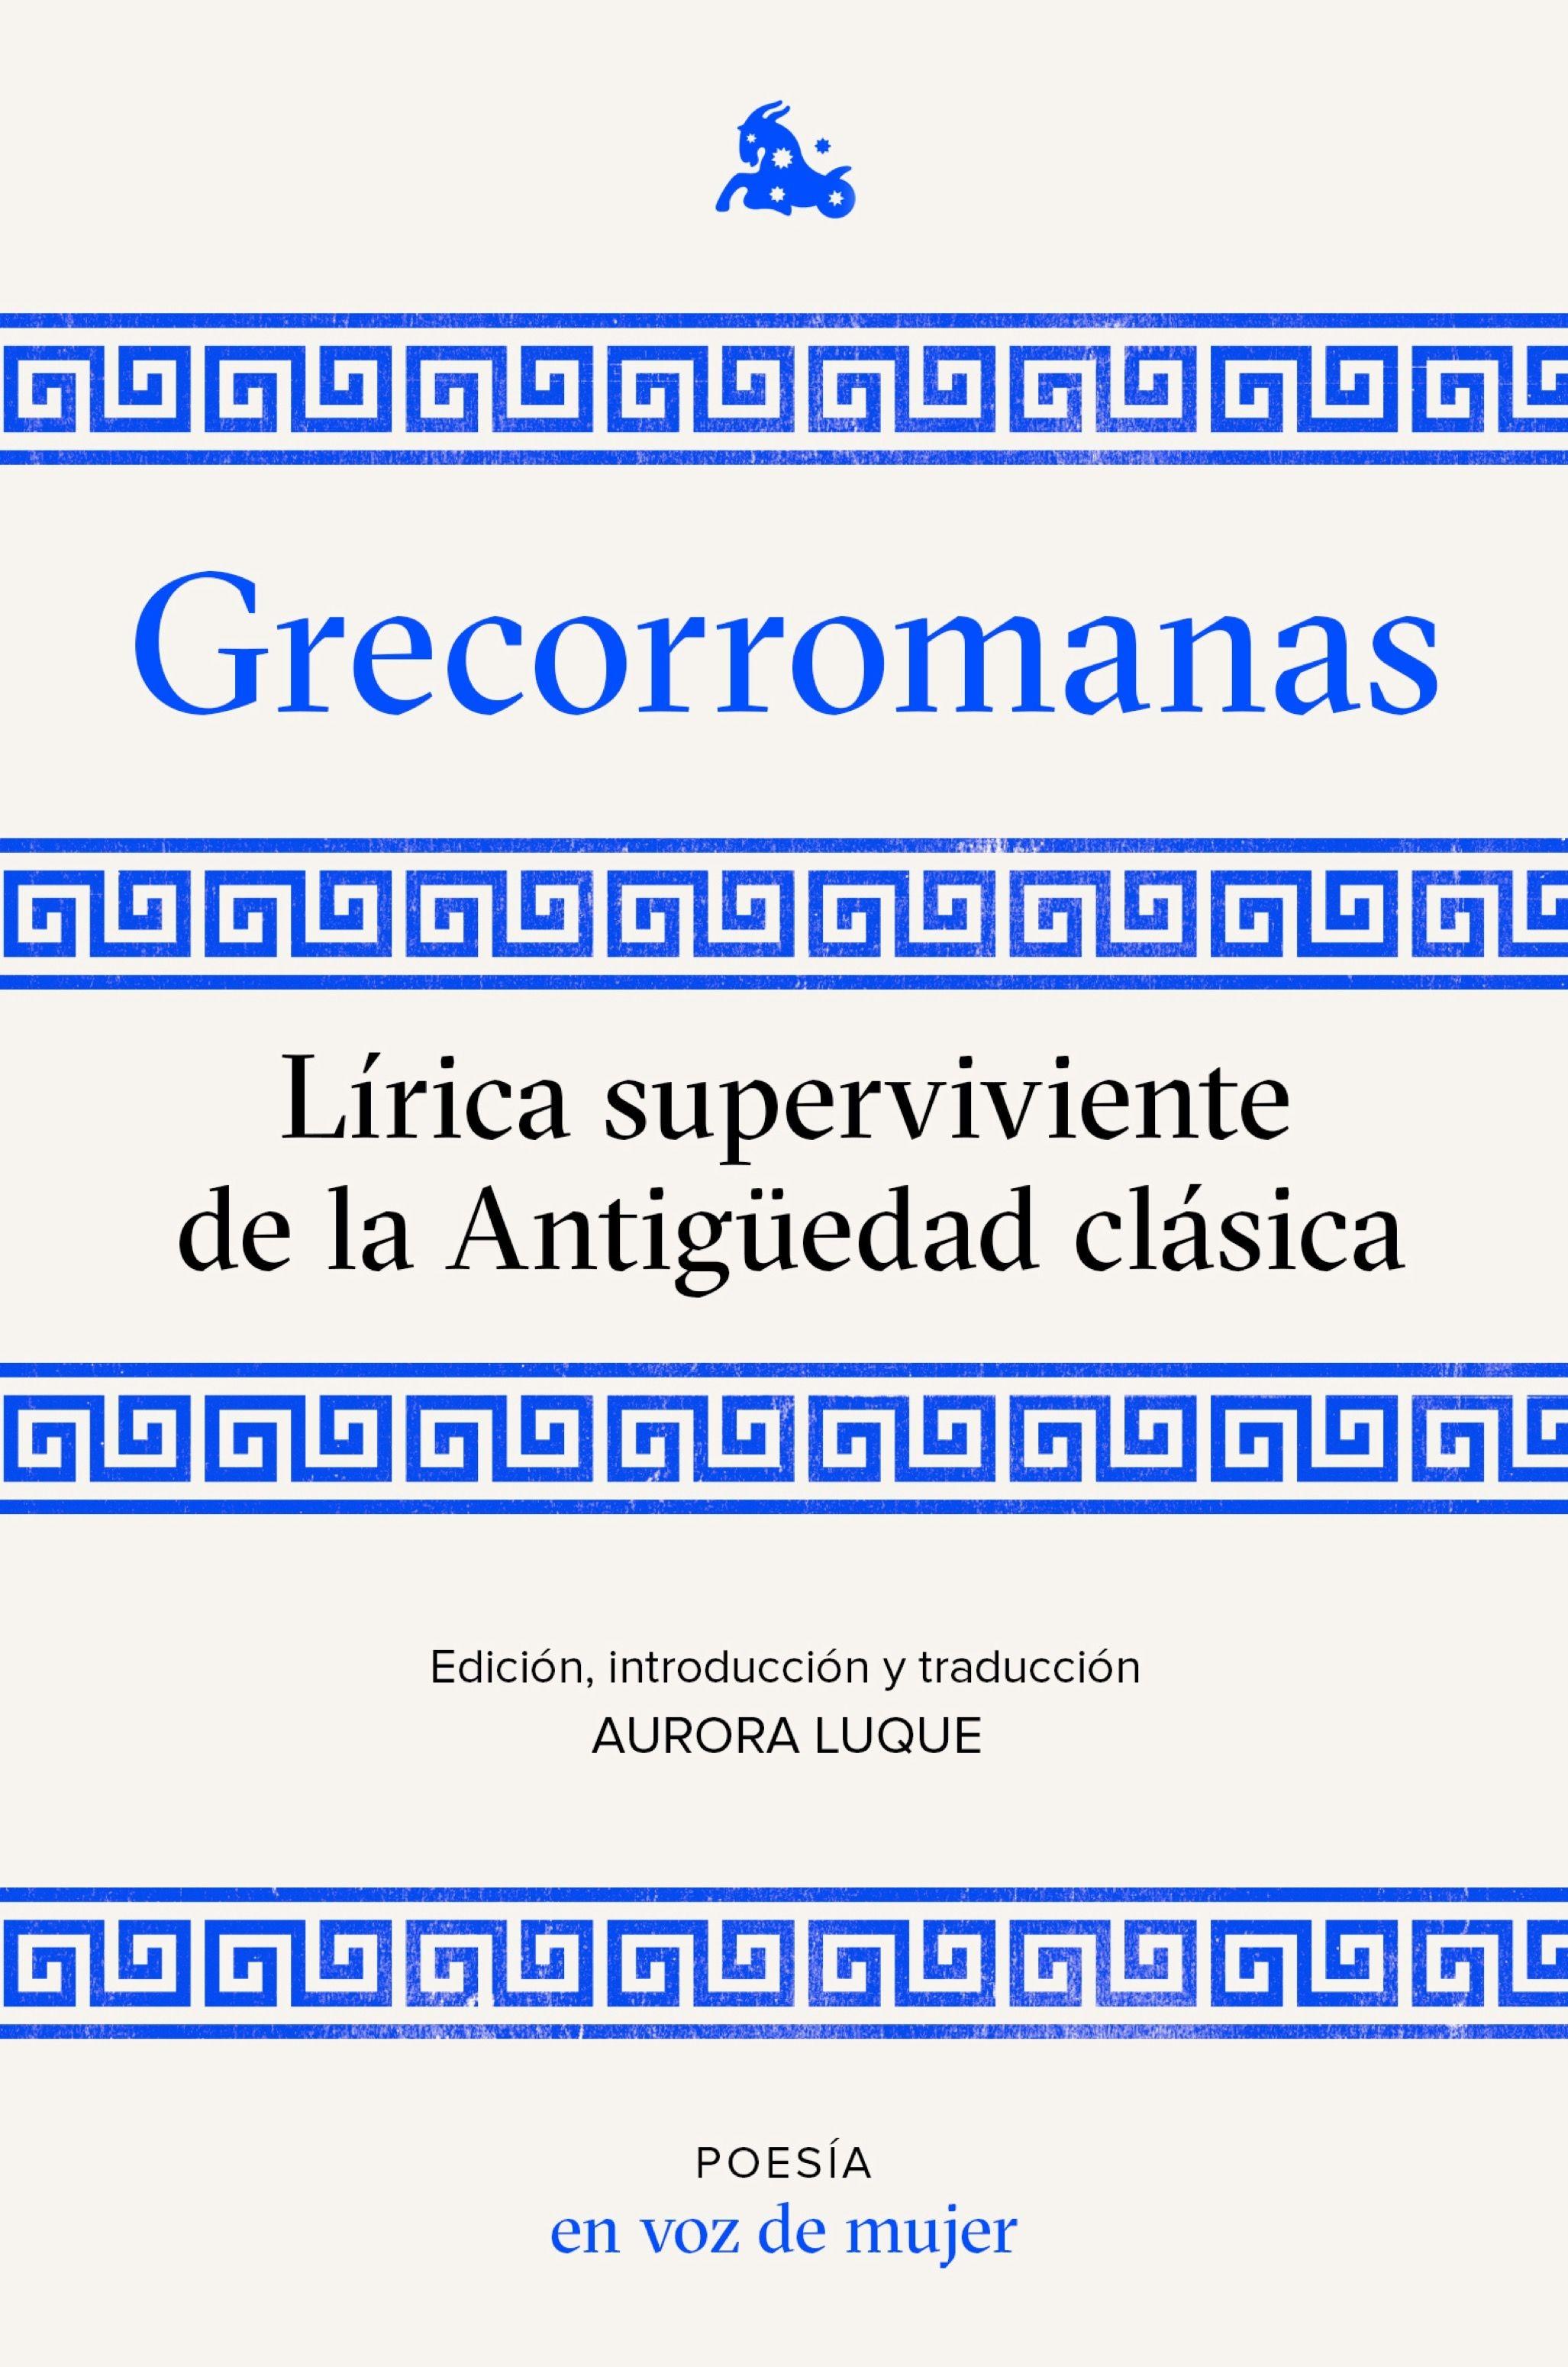 Grecorromanas. Lírica superviviente de la Antigüedad clásica "Edición, introducción y traducción a cargo de Aurora Luque". 